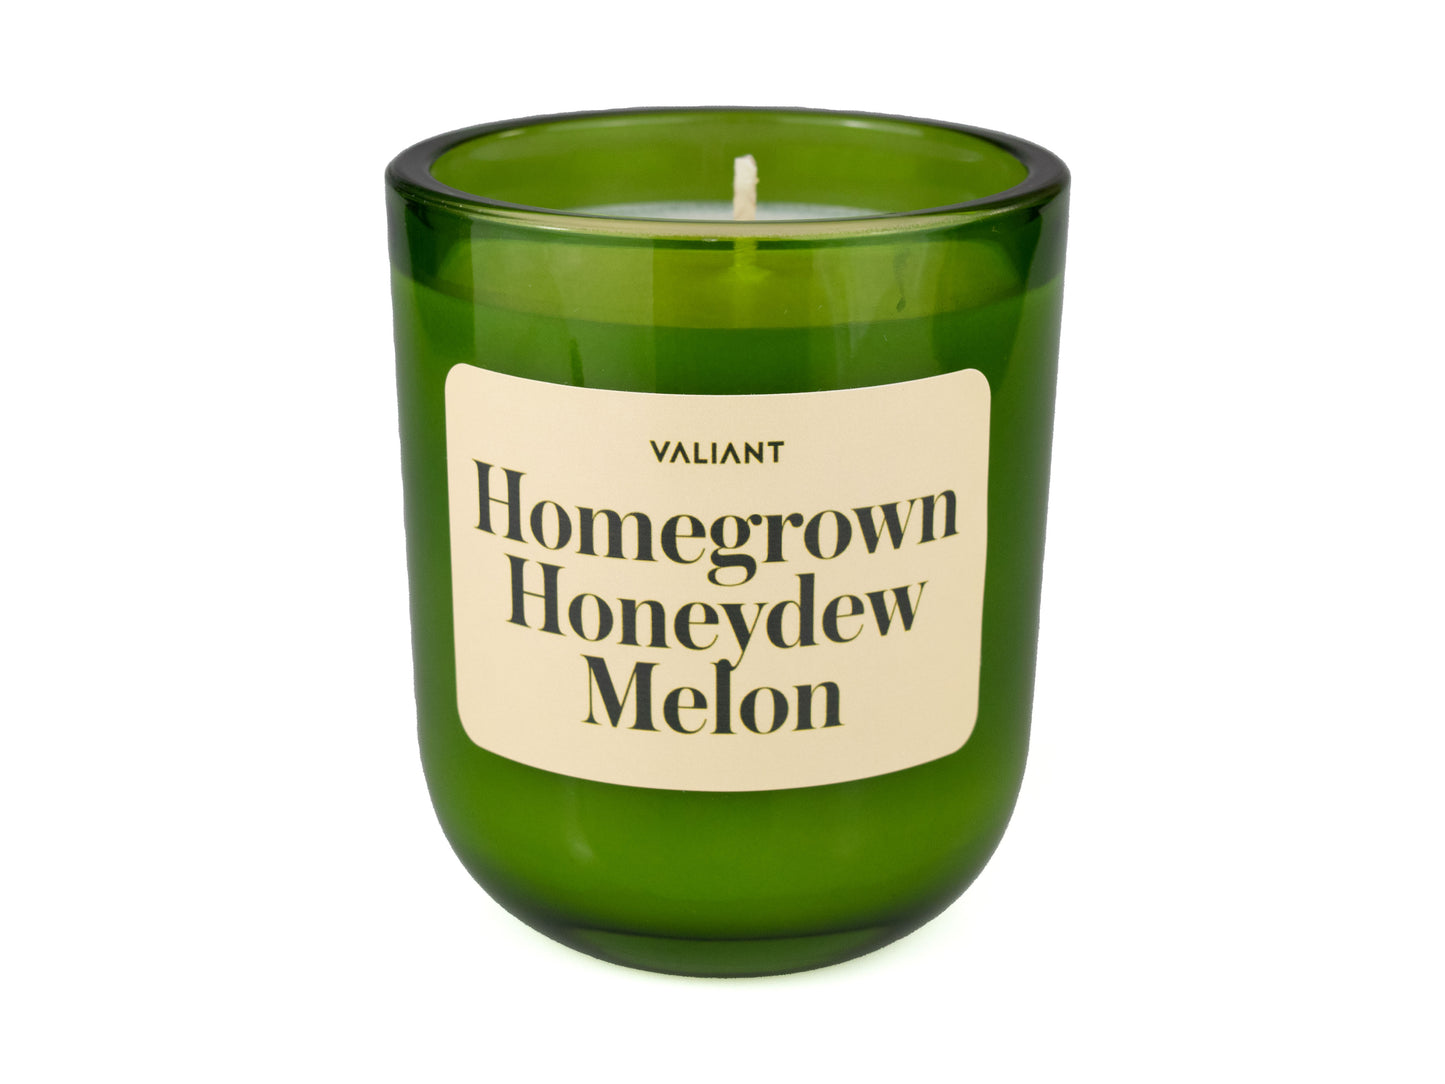 Homegrown Honeydew Melon Candle